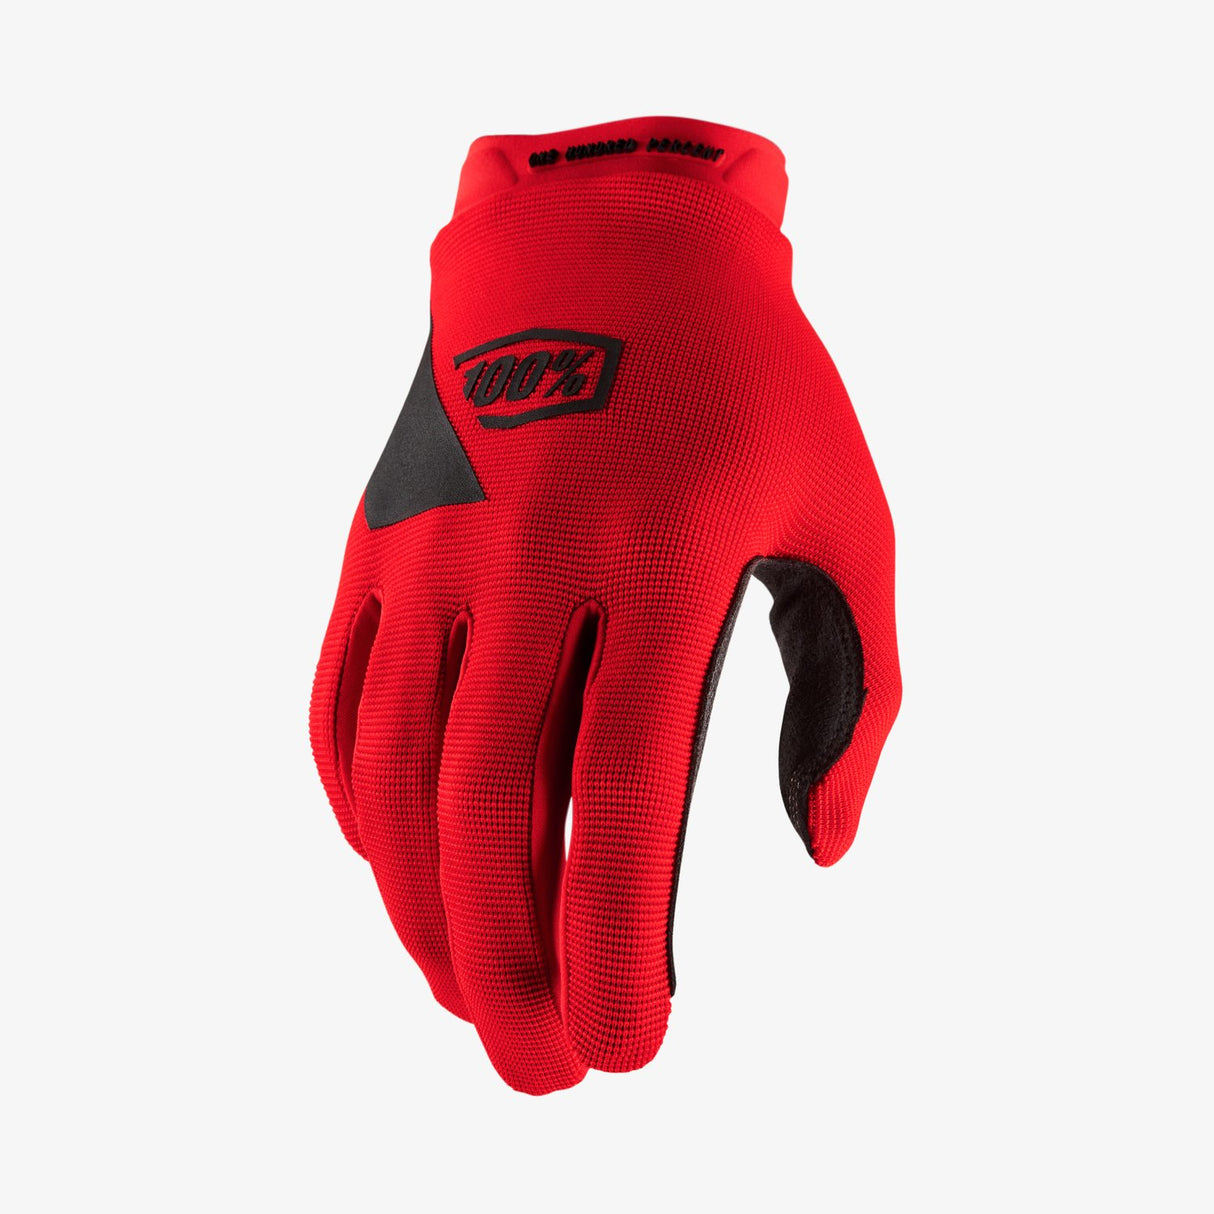 Ride 100% RIDECAMP Mountain Bike Full Finger Glove Red - SM Misc Full Catalog Ride 100%